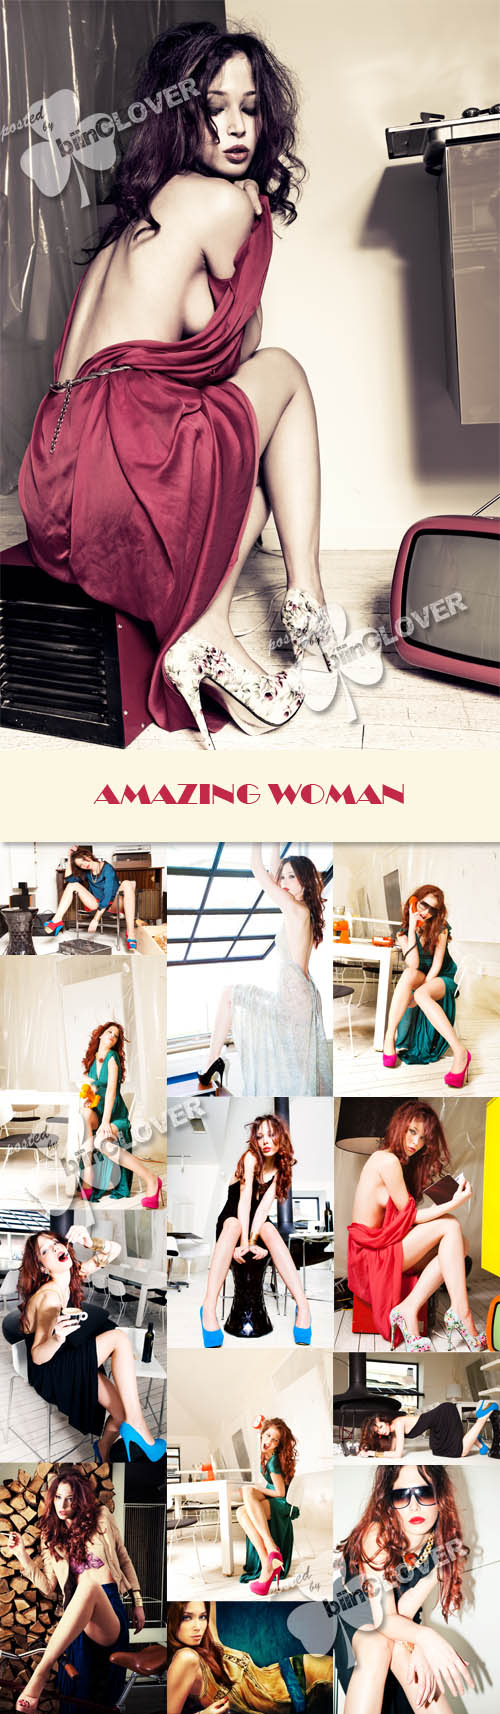 Amazing woman 0211